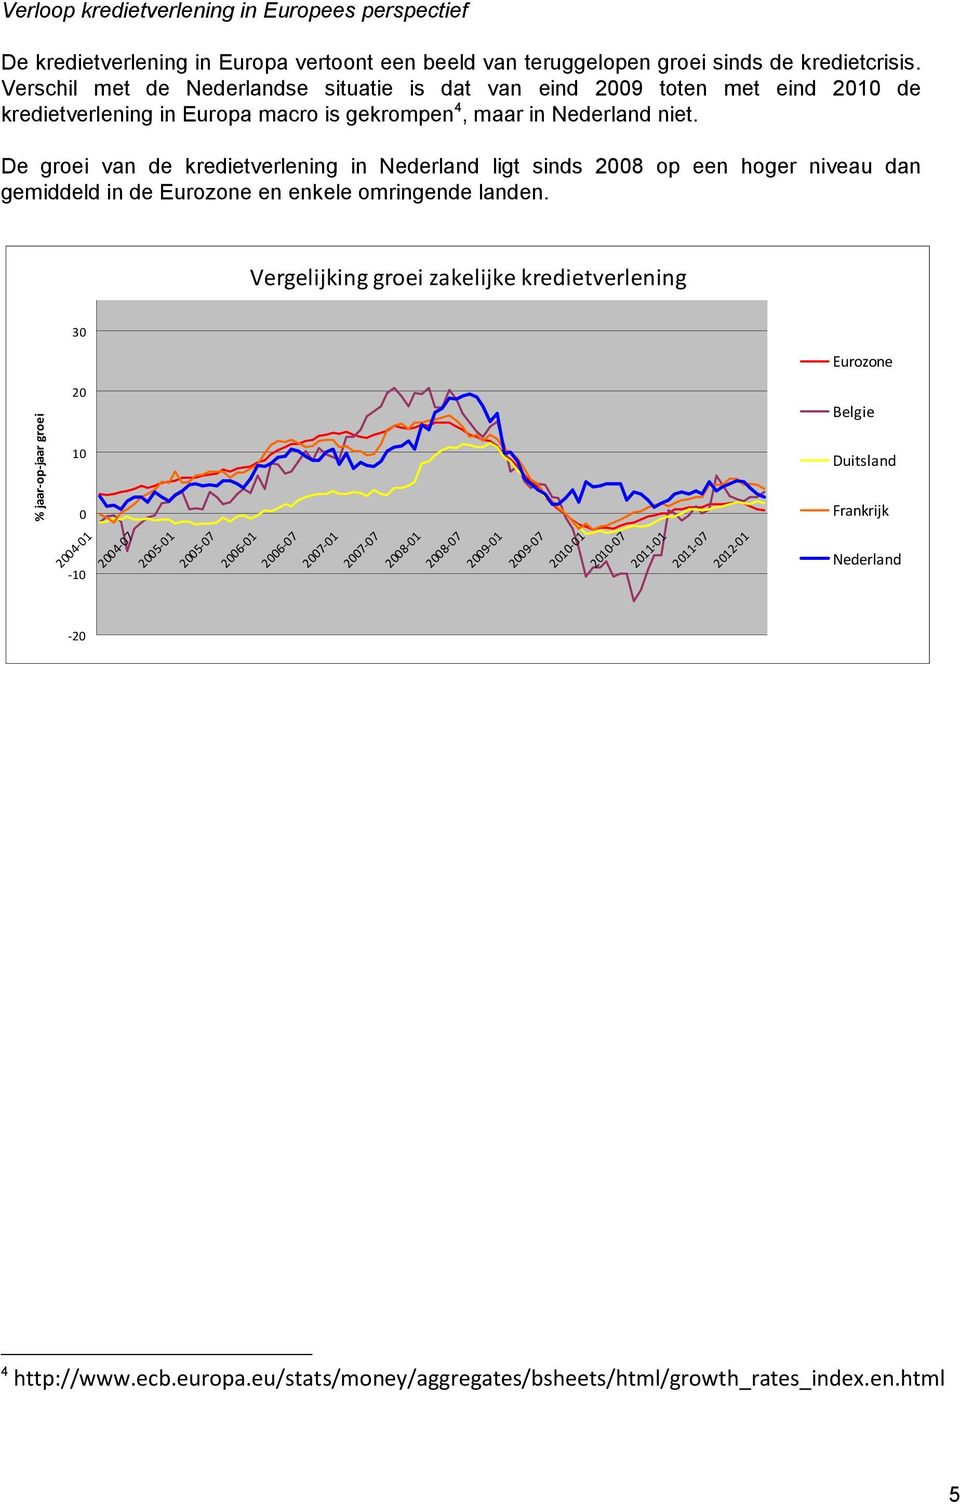 De groei van de kredietverlening in Nederland ligt sinds 2008 op een hoger niveau dan gemiddeld in de Eurozone en enkele omringende landen.